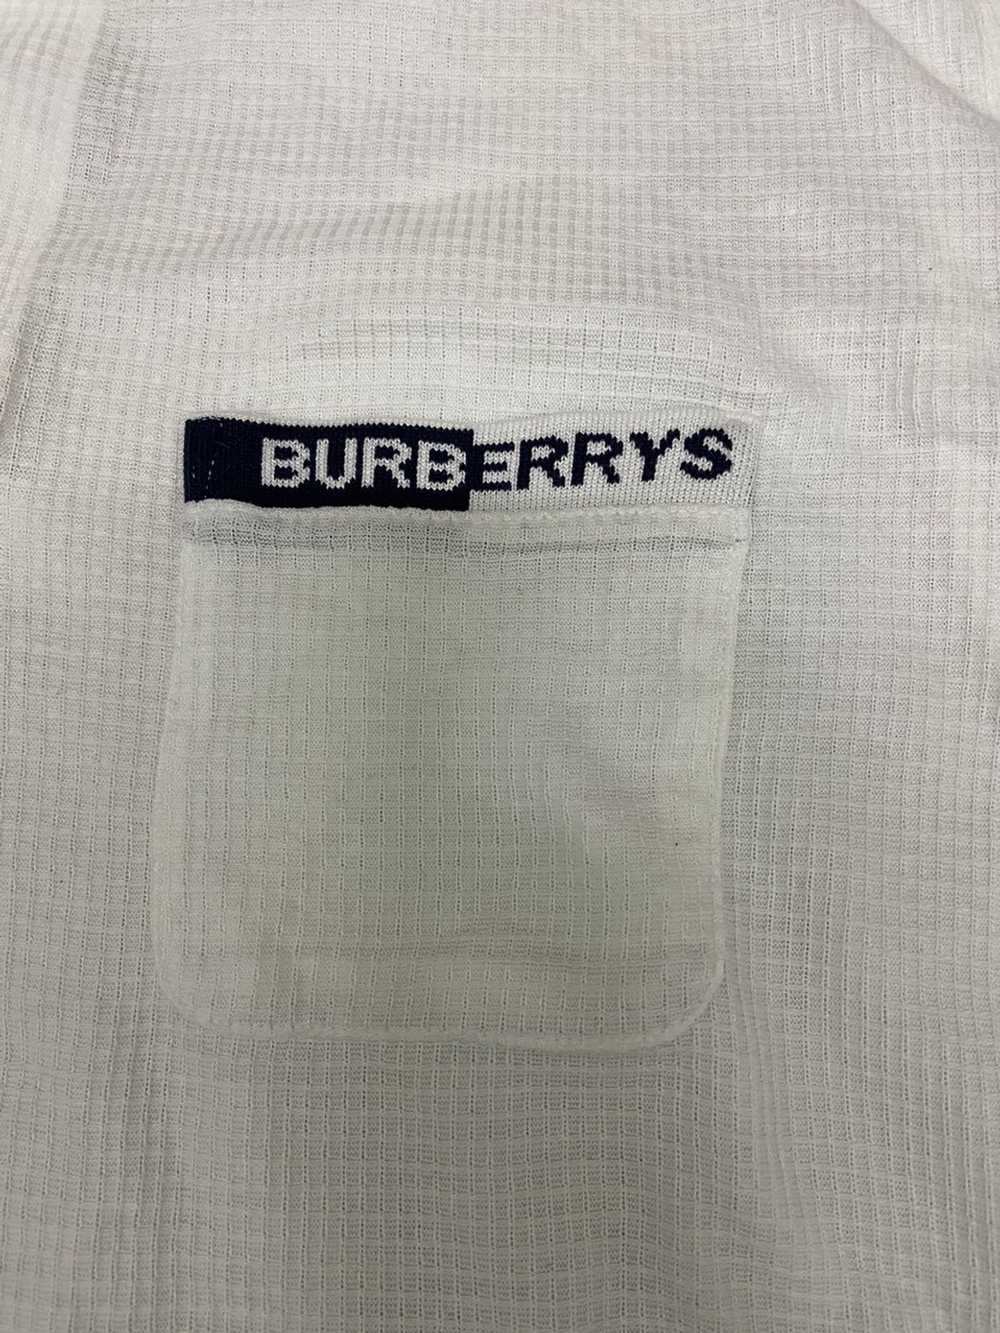 Burberry Rare vintage burberry shirt big logo - image 10